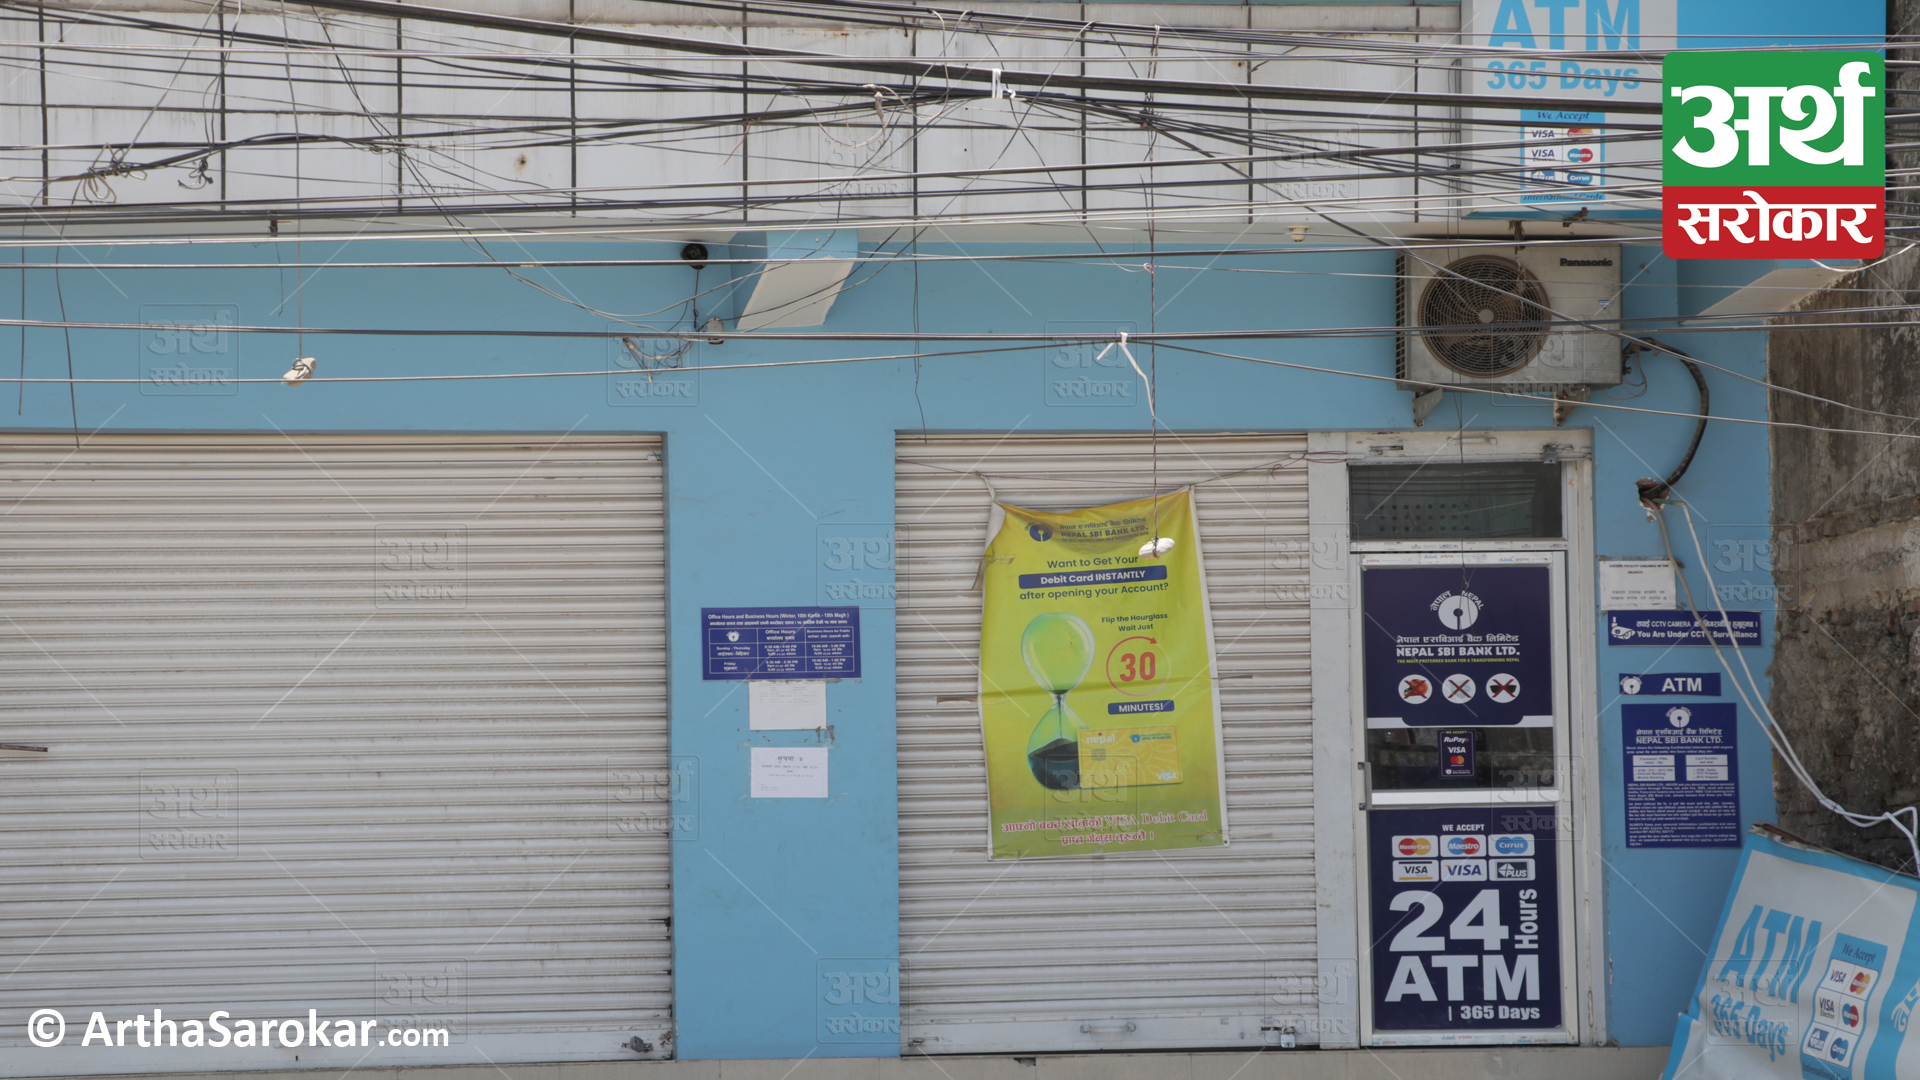 कोराना कहरमा बैंकिङ सेवाः कुन बैंकको एटिएम सुरक्षित, कुन बैंकको एटिएम सुरक्षा झुर ? (फोटो-कथा)